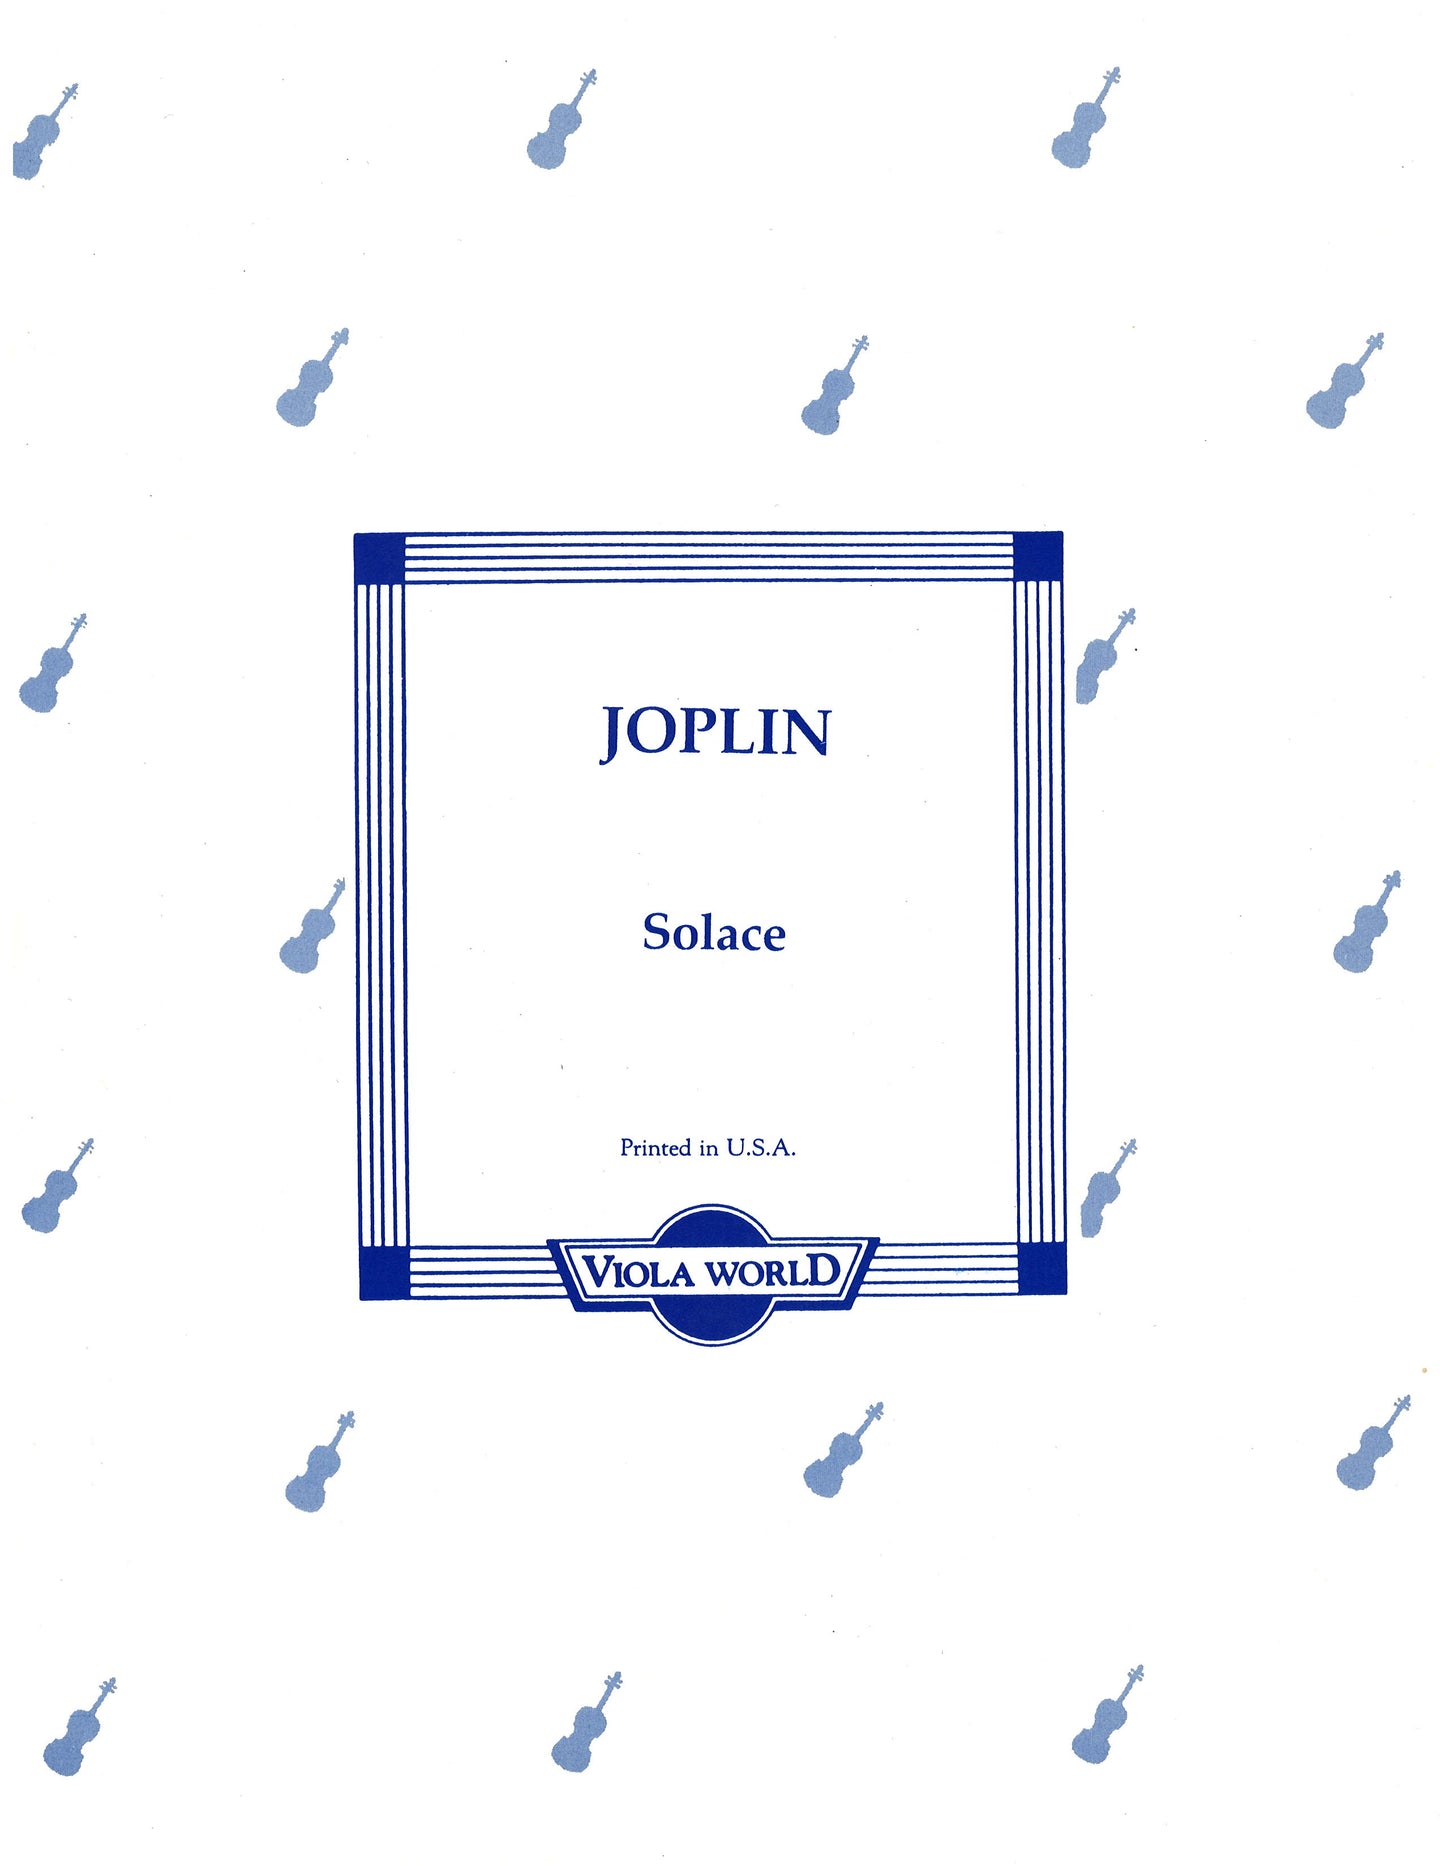 Joplin - Solace